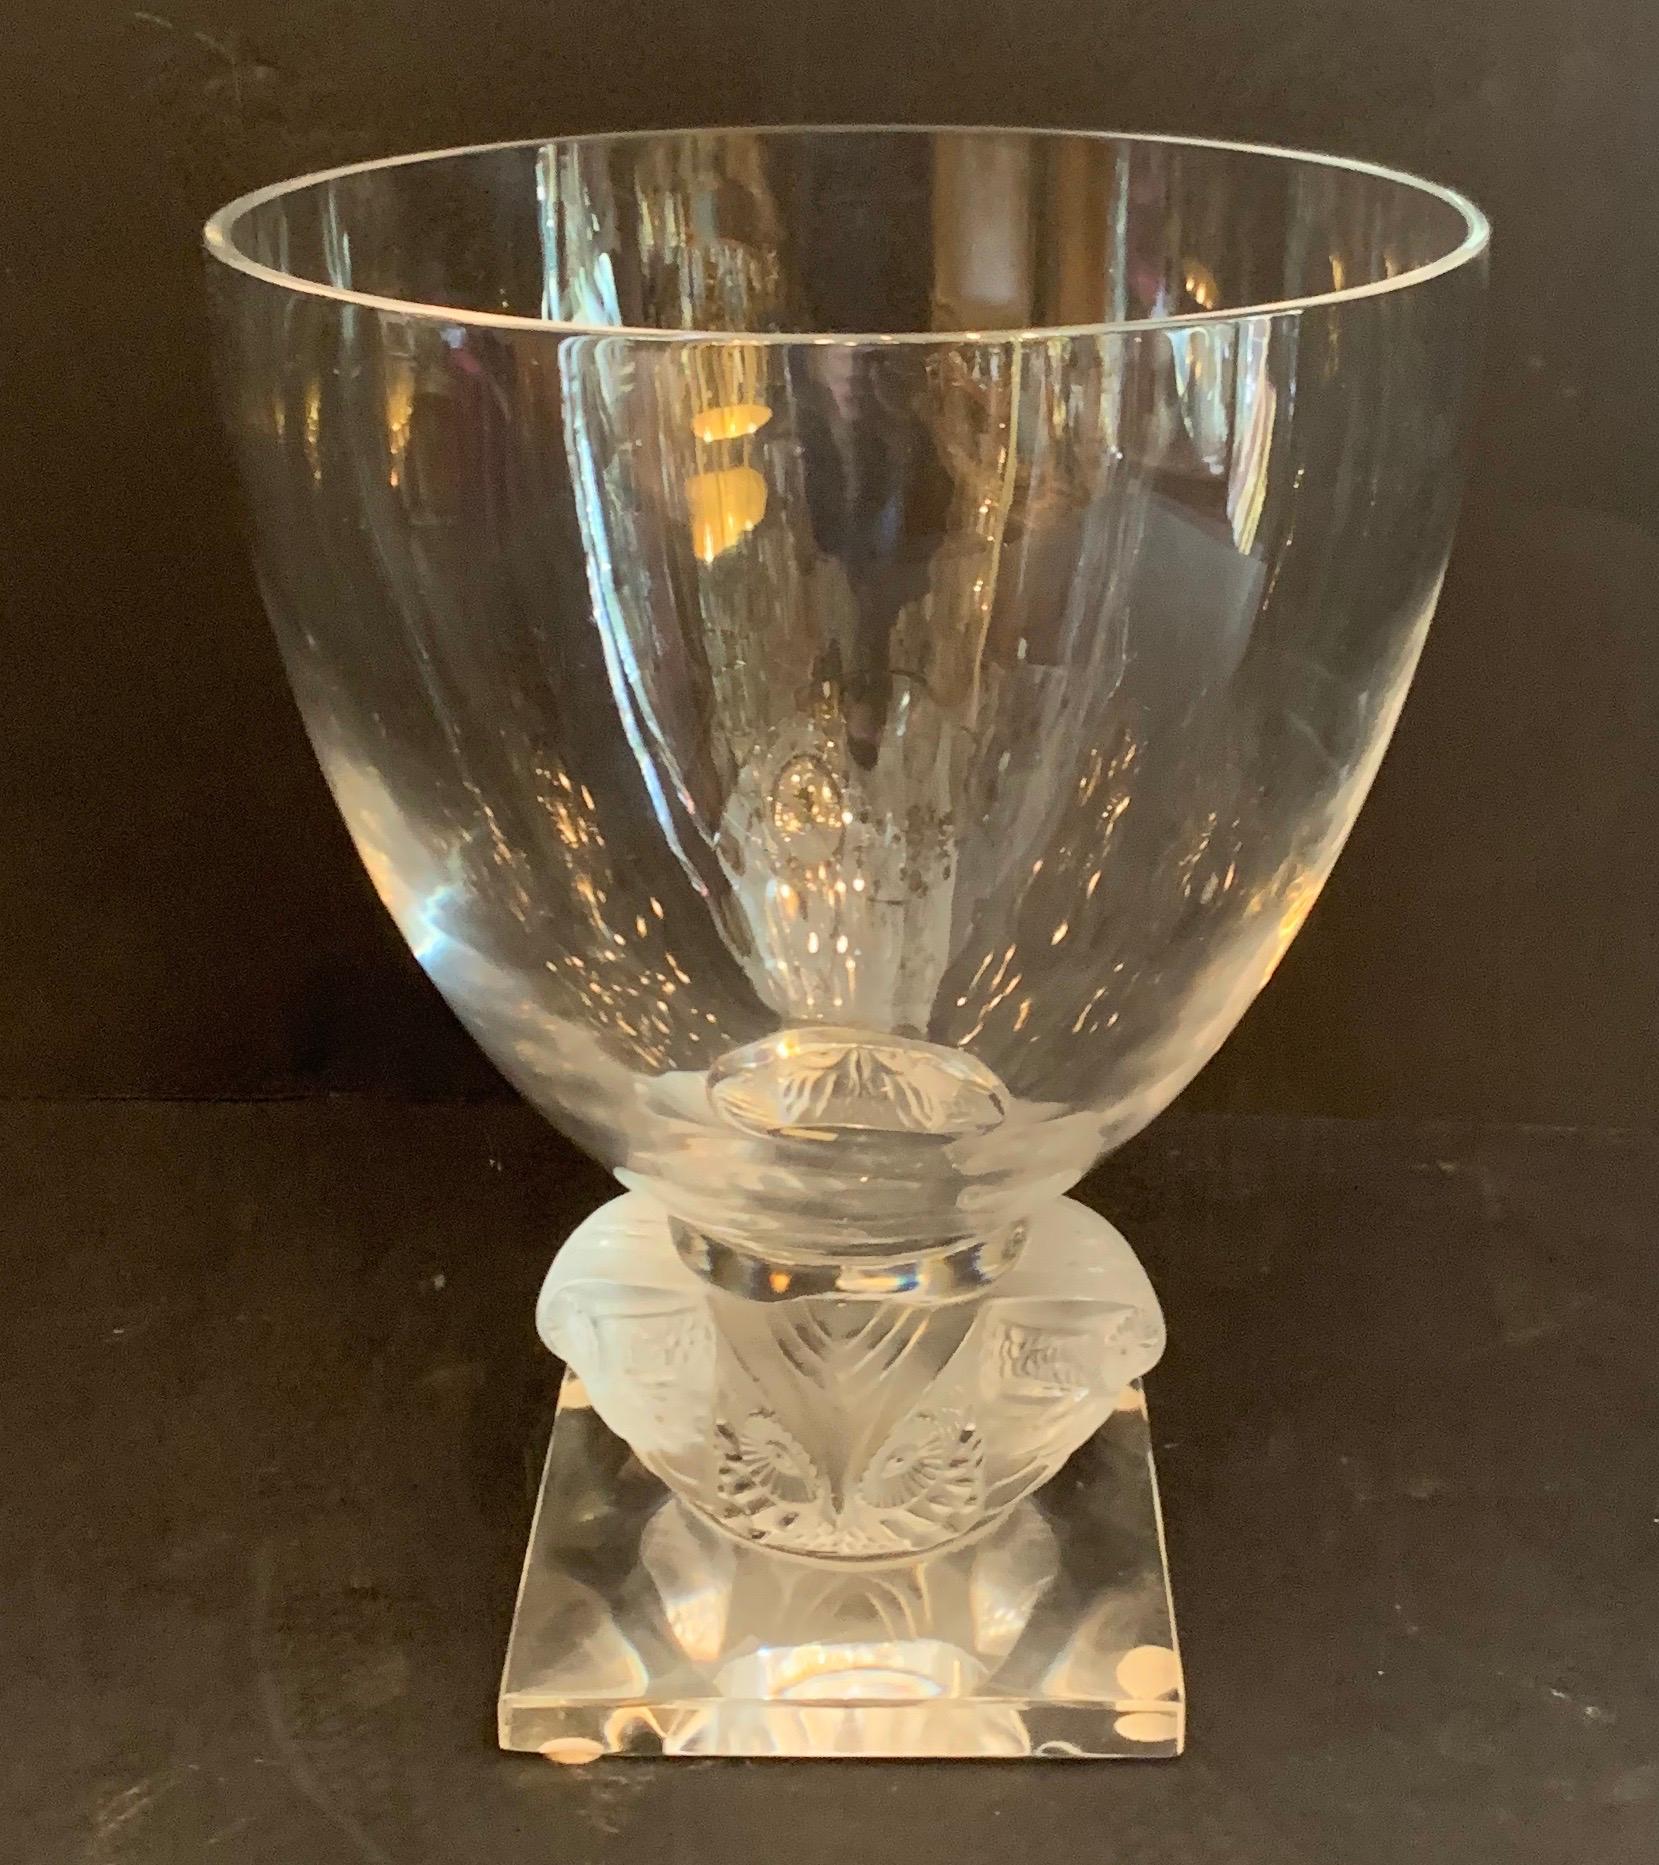 Un merveilleux grand vase hibou Grand Ducs en cristal clair et givré de Lalique France. Cet épais vase en cristal clair est posé sur un piédestal orné de quatre hiboux sur une base carrée. Sur le côté de la base est gravé 